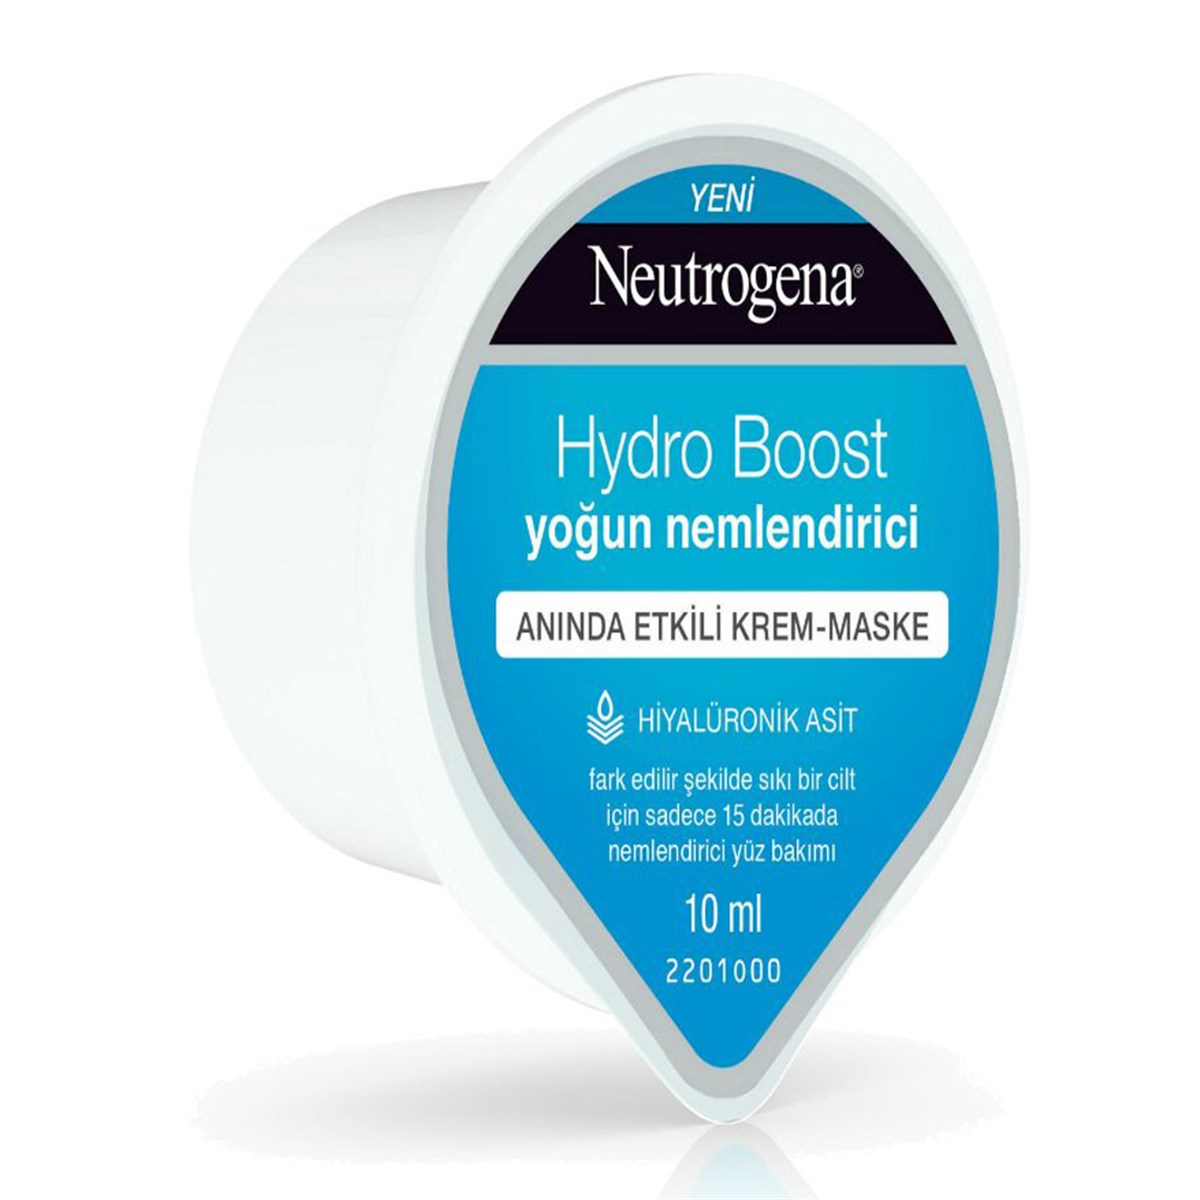 Neutrogena Hydro Boost Yoğun Nemlendirici Anında Etkili Krem-Maske 10ml -  Platin